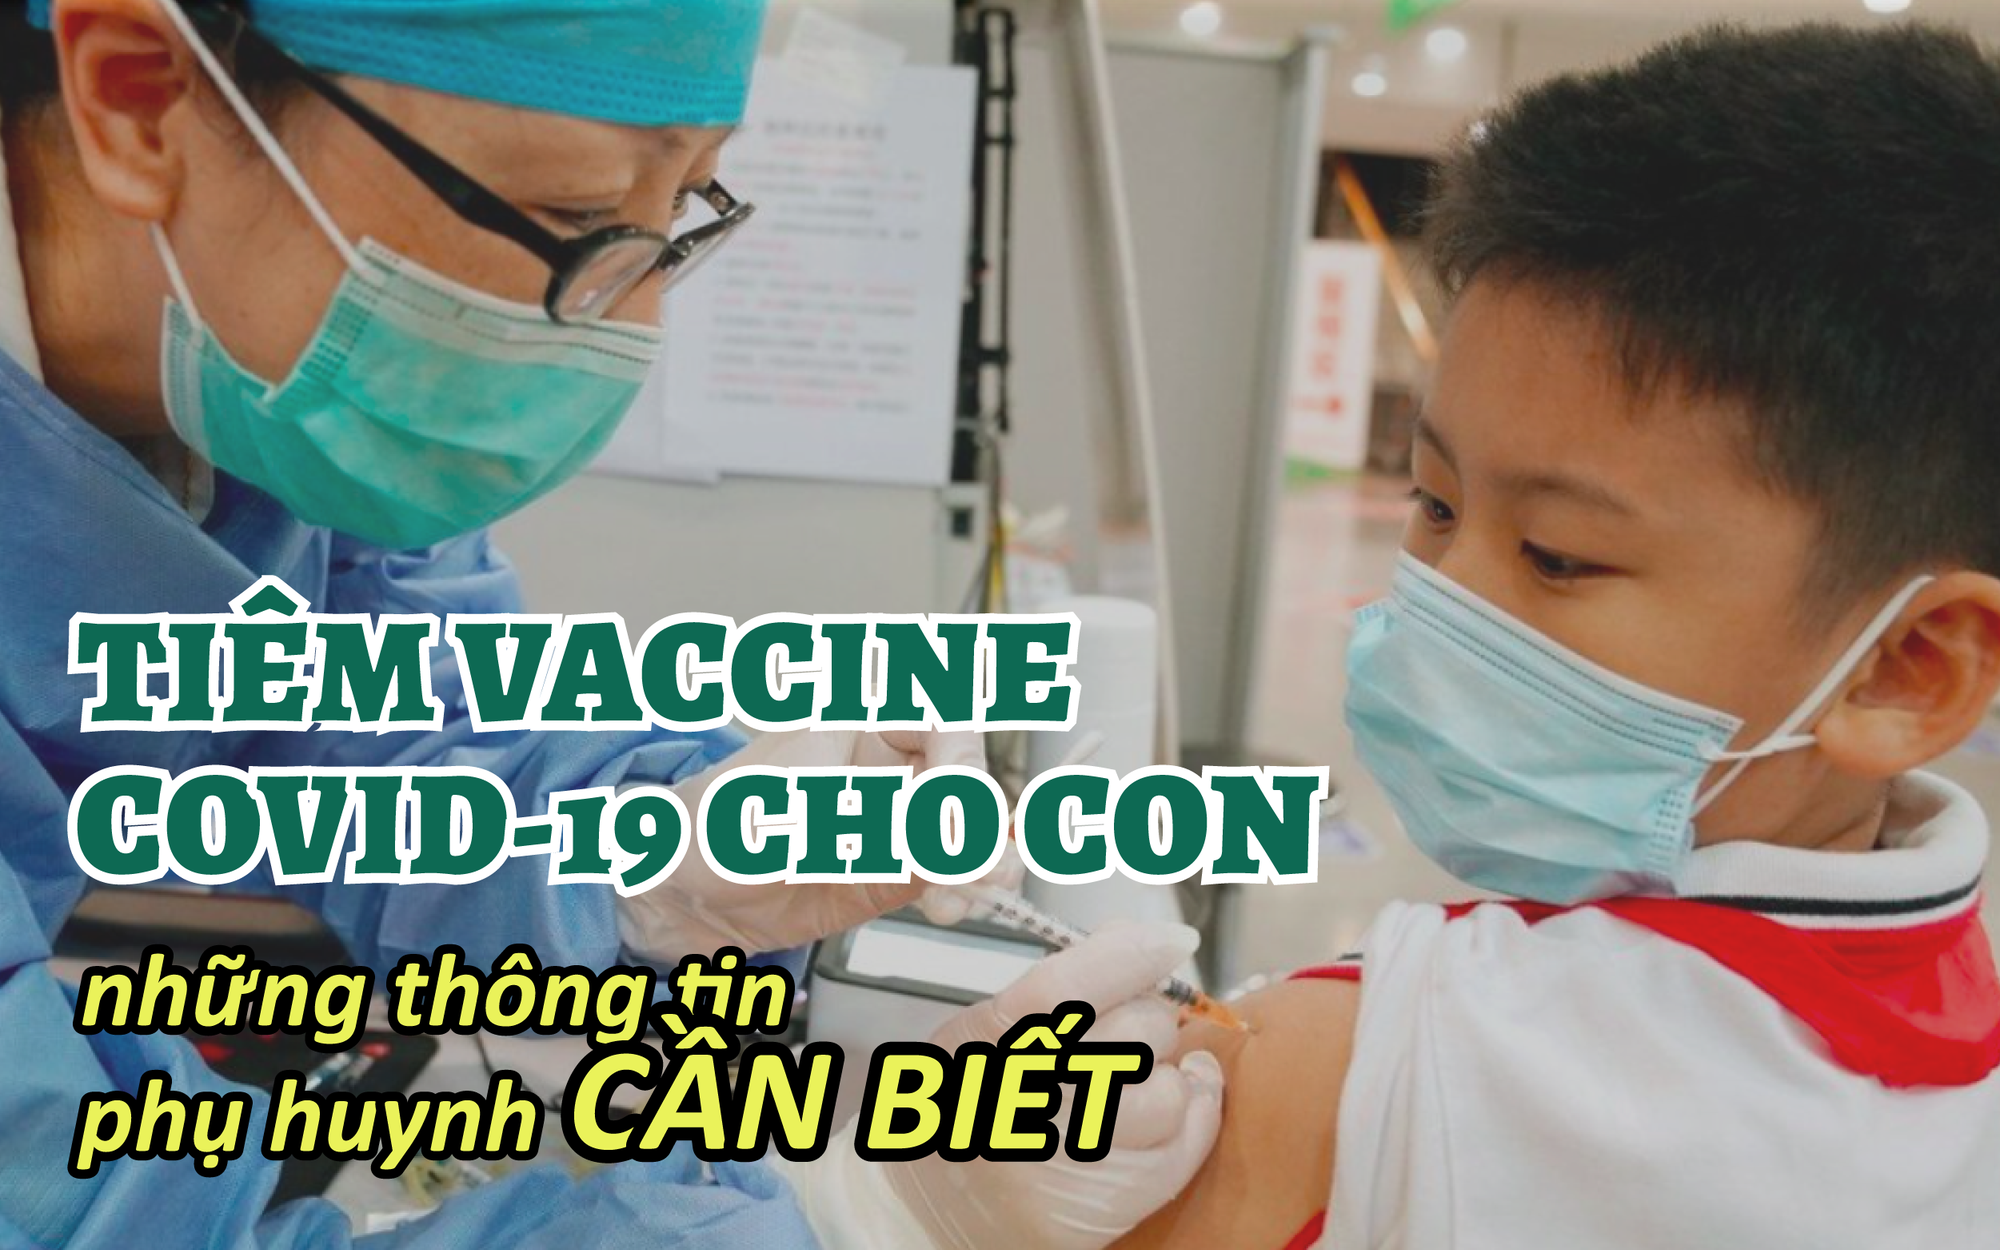 Tiêm vaccine COVID-19 cho trẻ từ 5-11 tuổi: Giải đáp mọi thắc mắc của phụ huynh